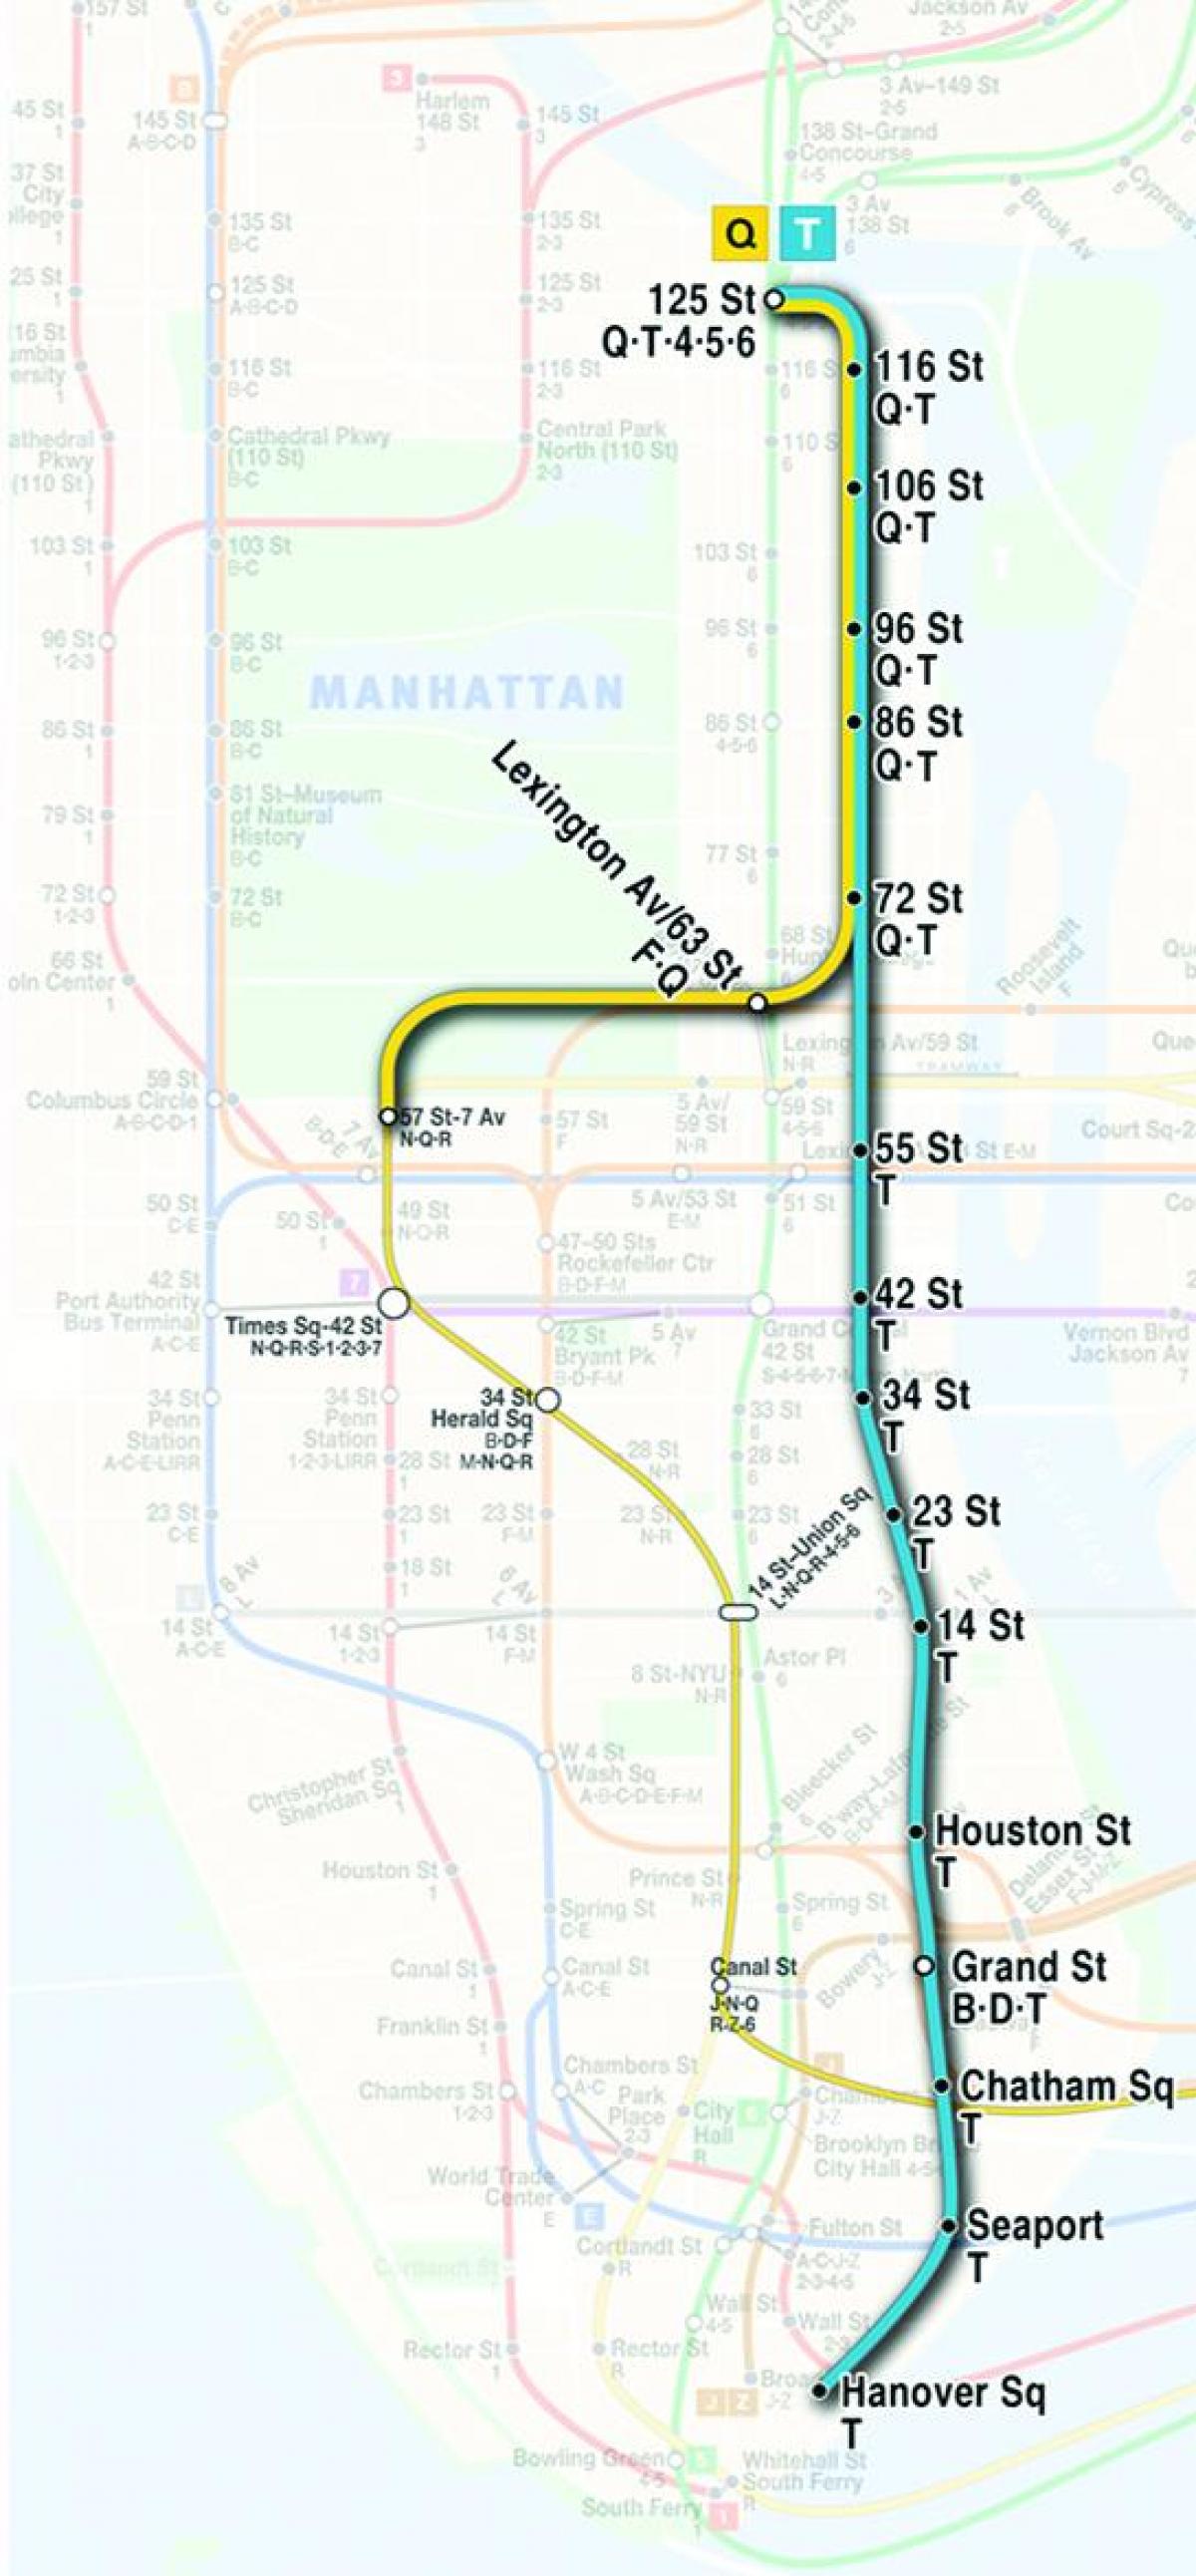 kaart van second avenue subway